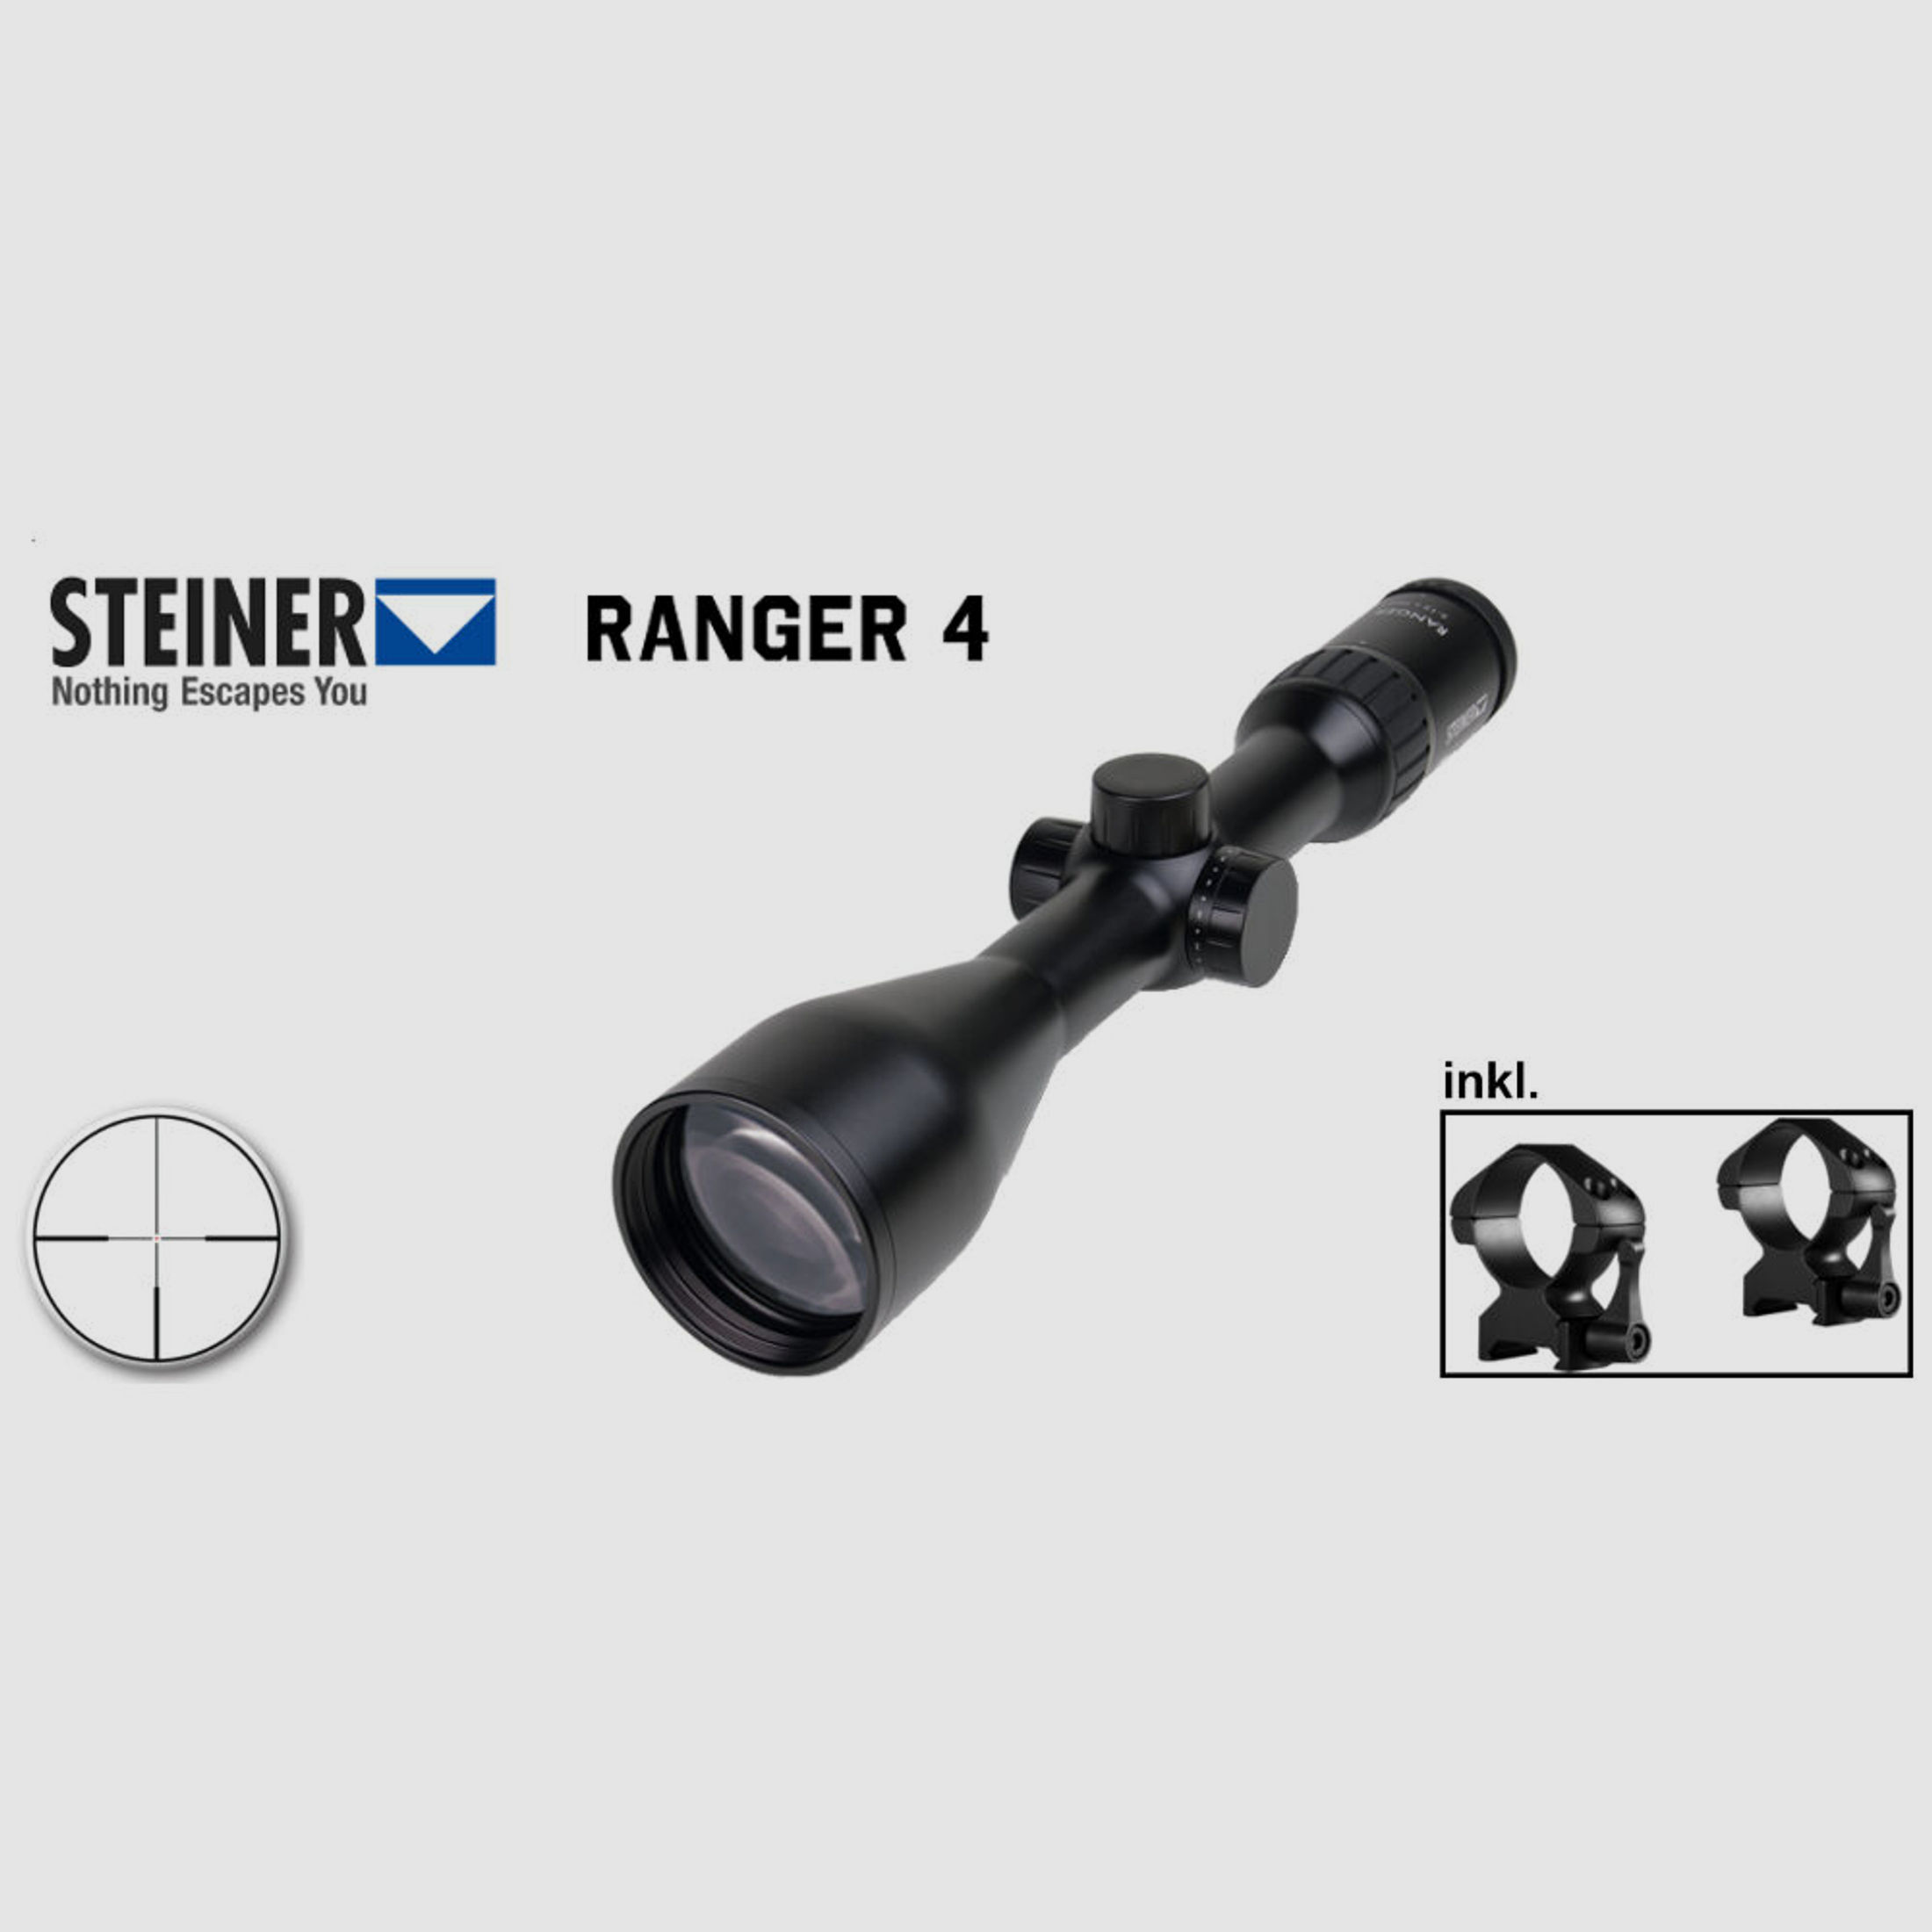 Brenner Komplettpaket:	 Brenner BR 20 Holzschaft mit Steiner Ranger 3-12x56